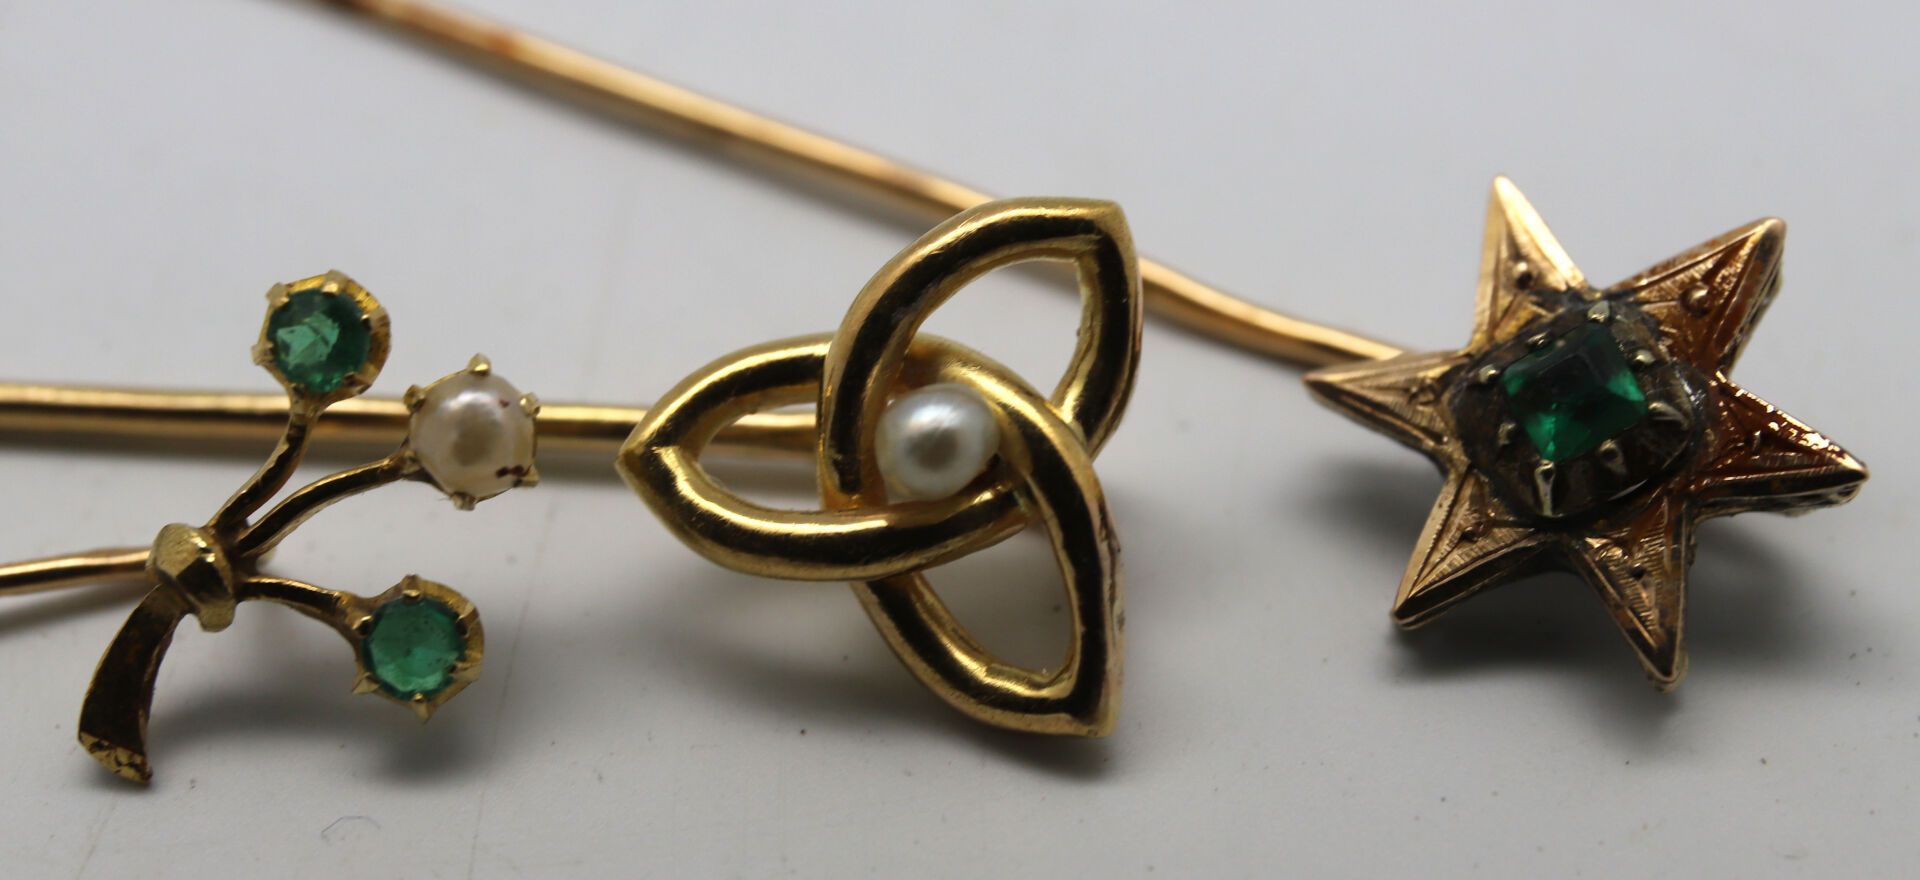 Null 三枚黄金领带夹，镶嵌珍珠和绿宝石。
重量：3.80 克